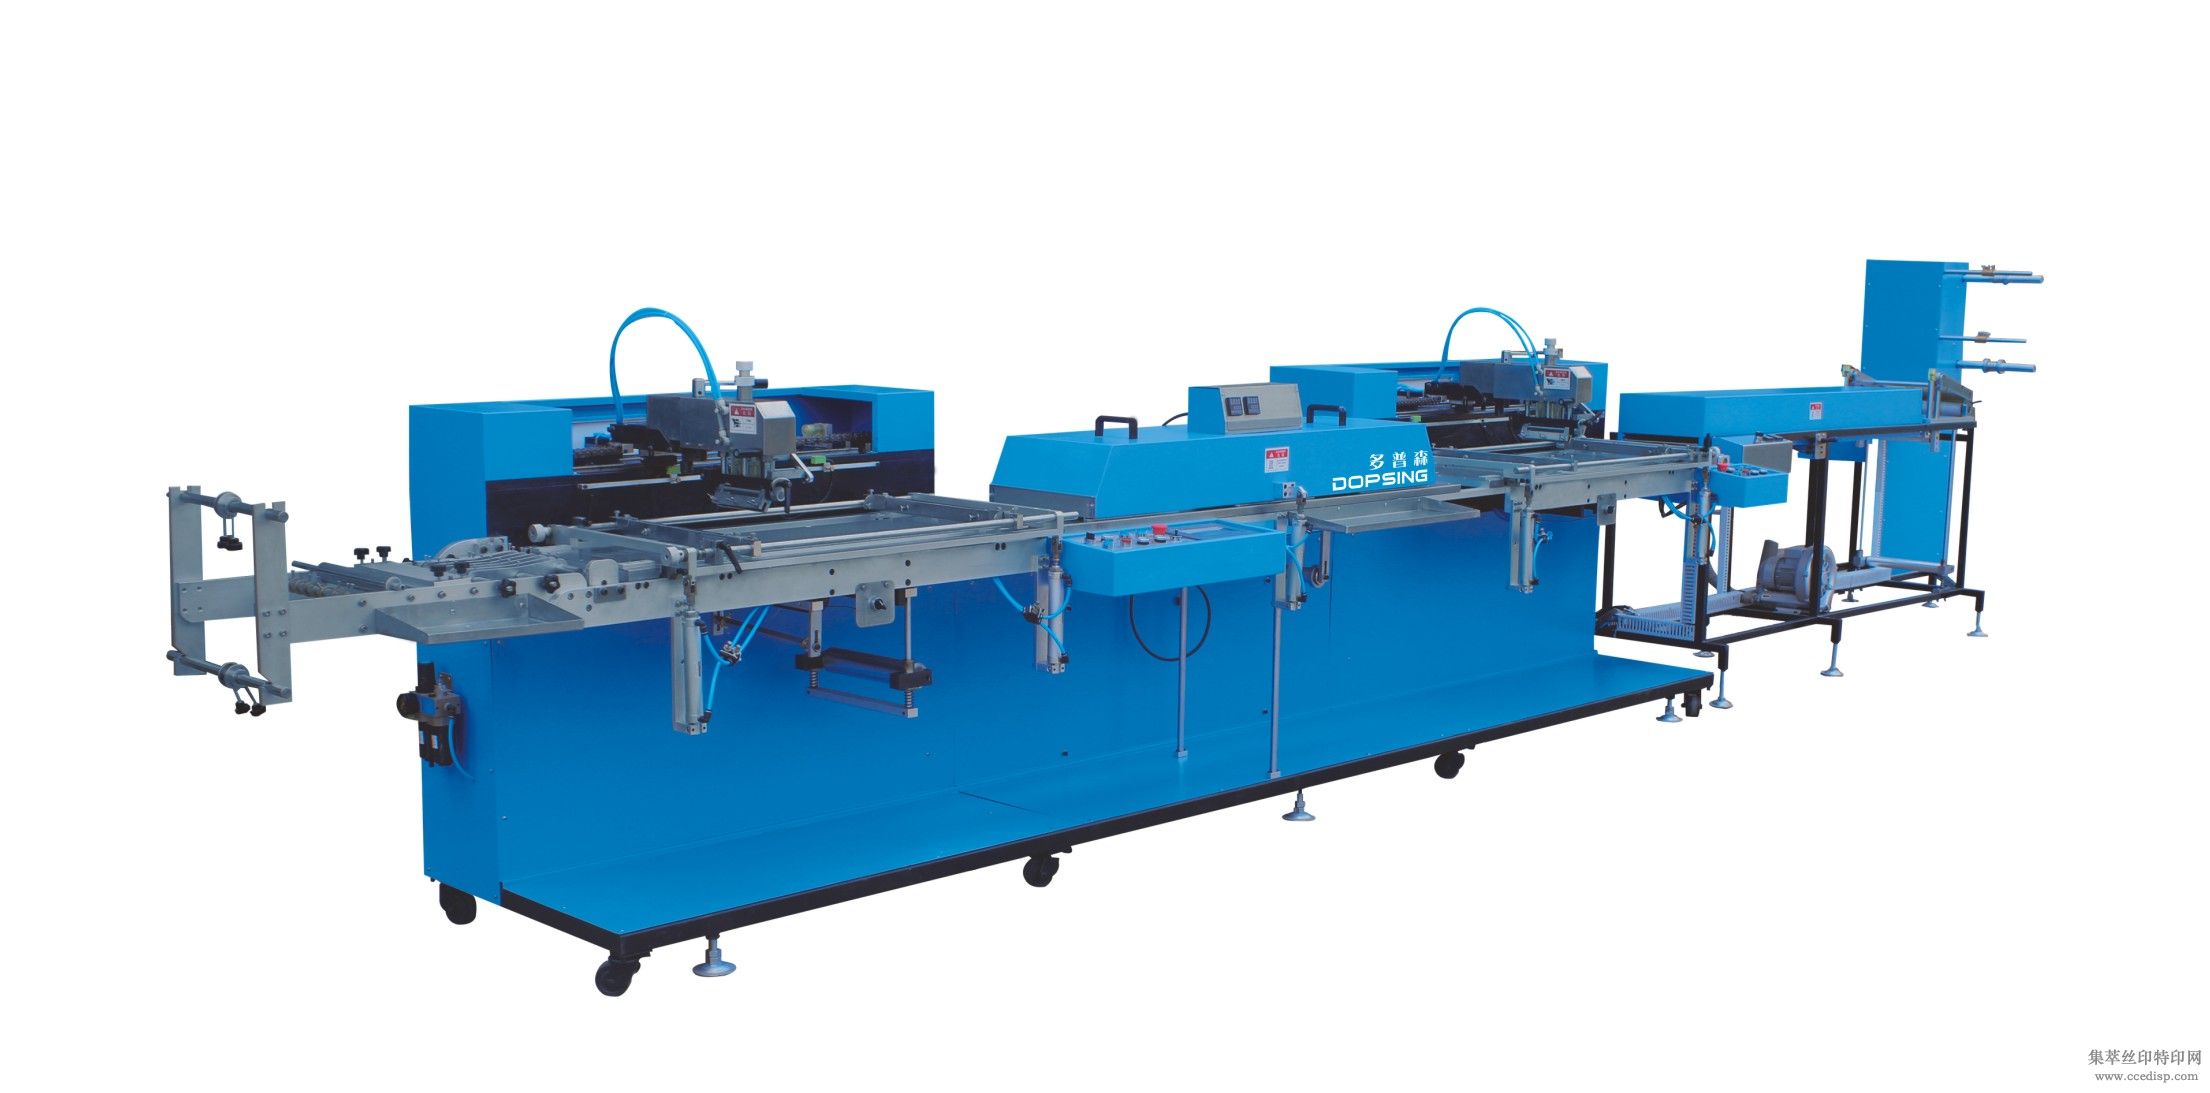 WET-4000S-02全自动丝网印刷机